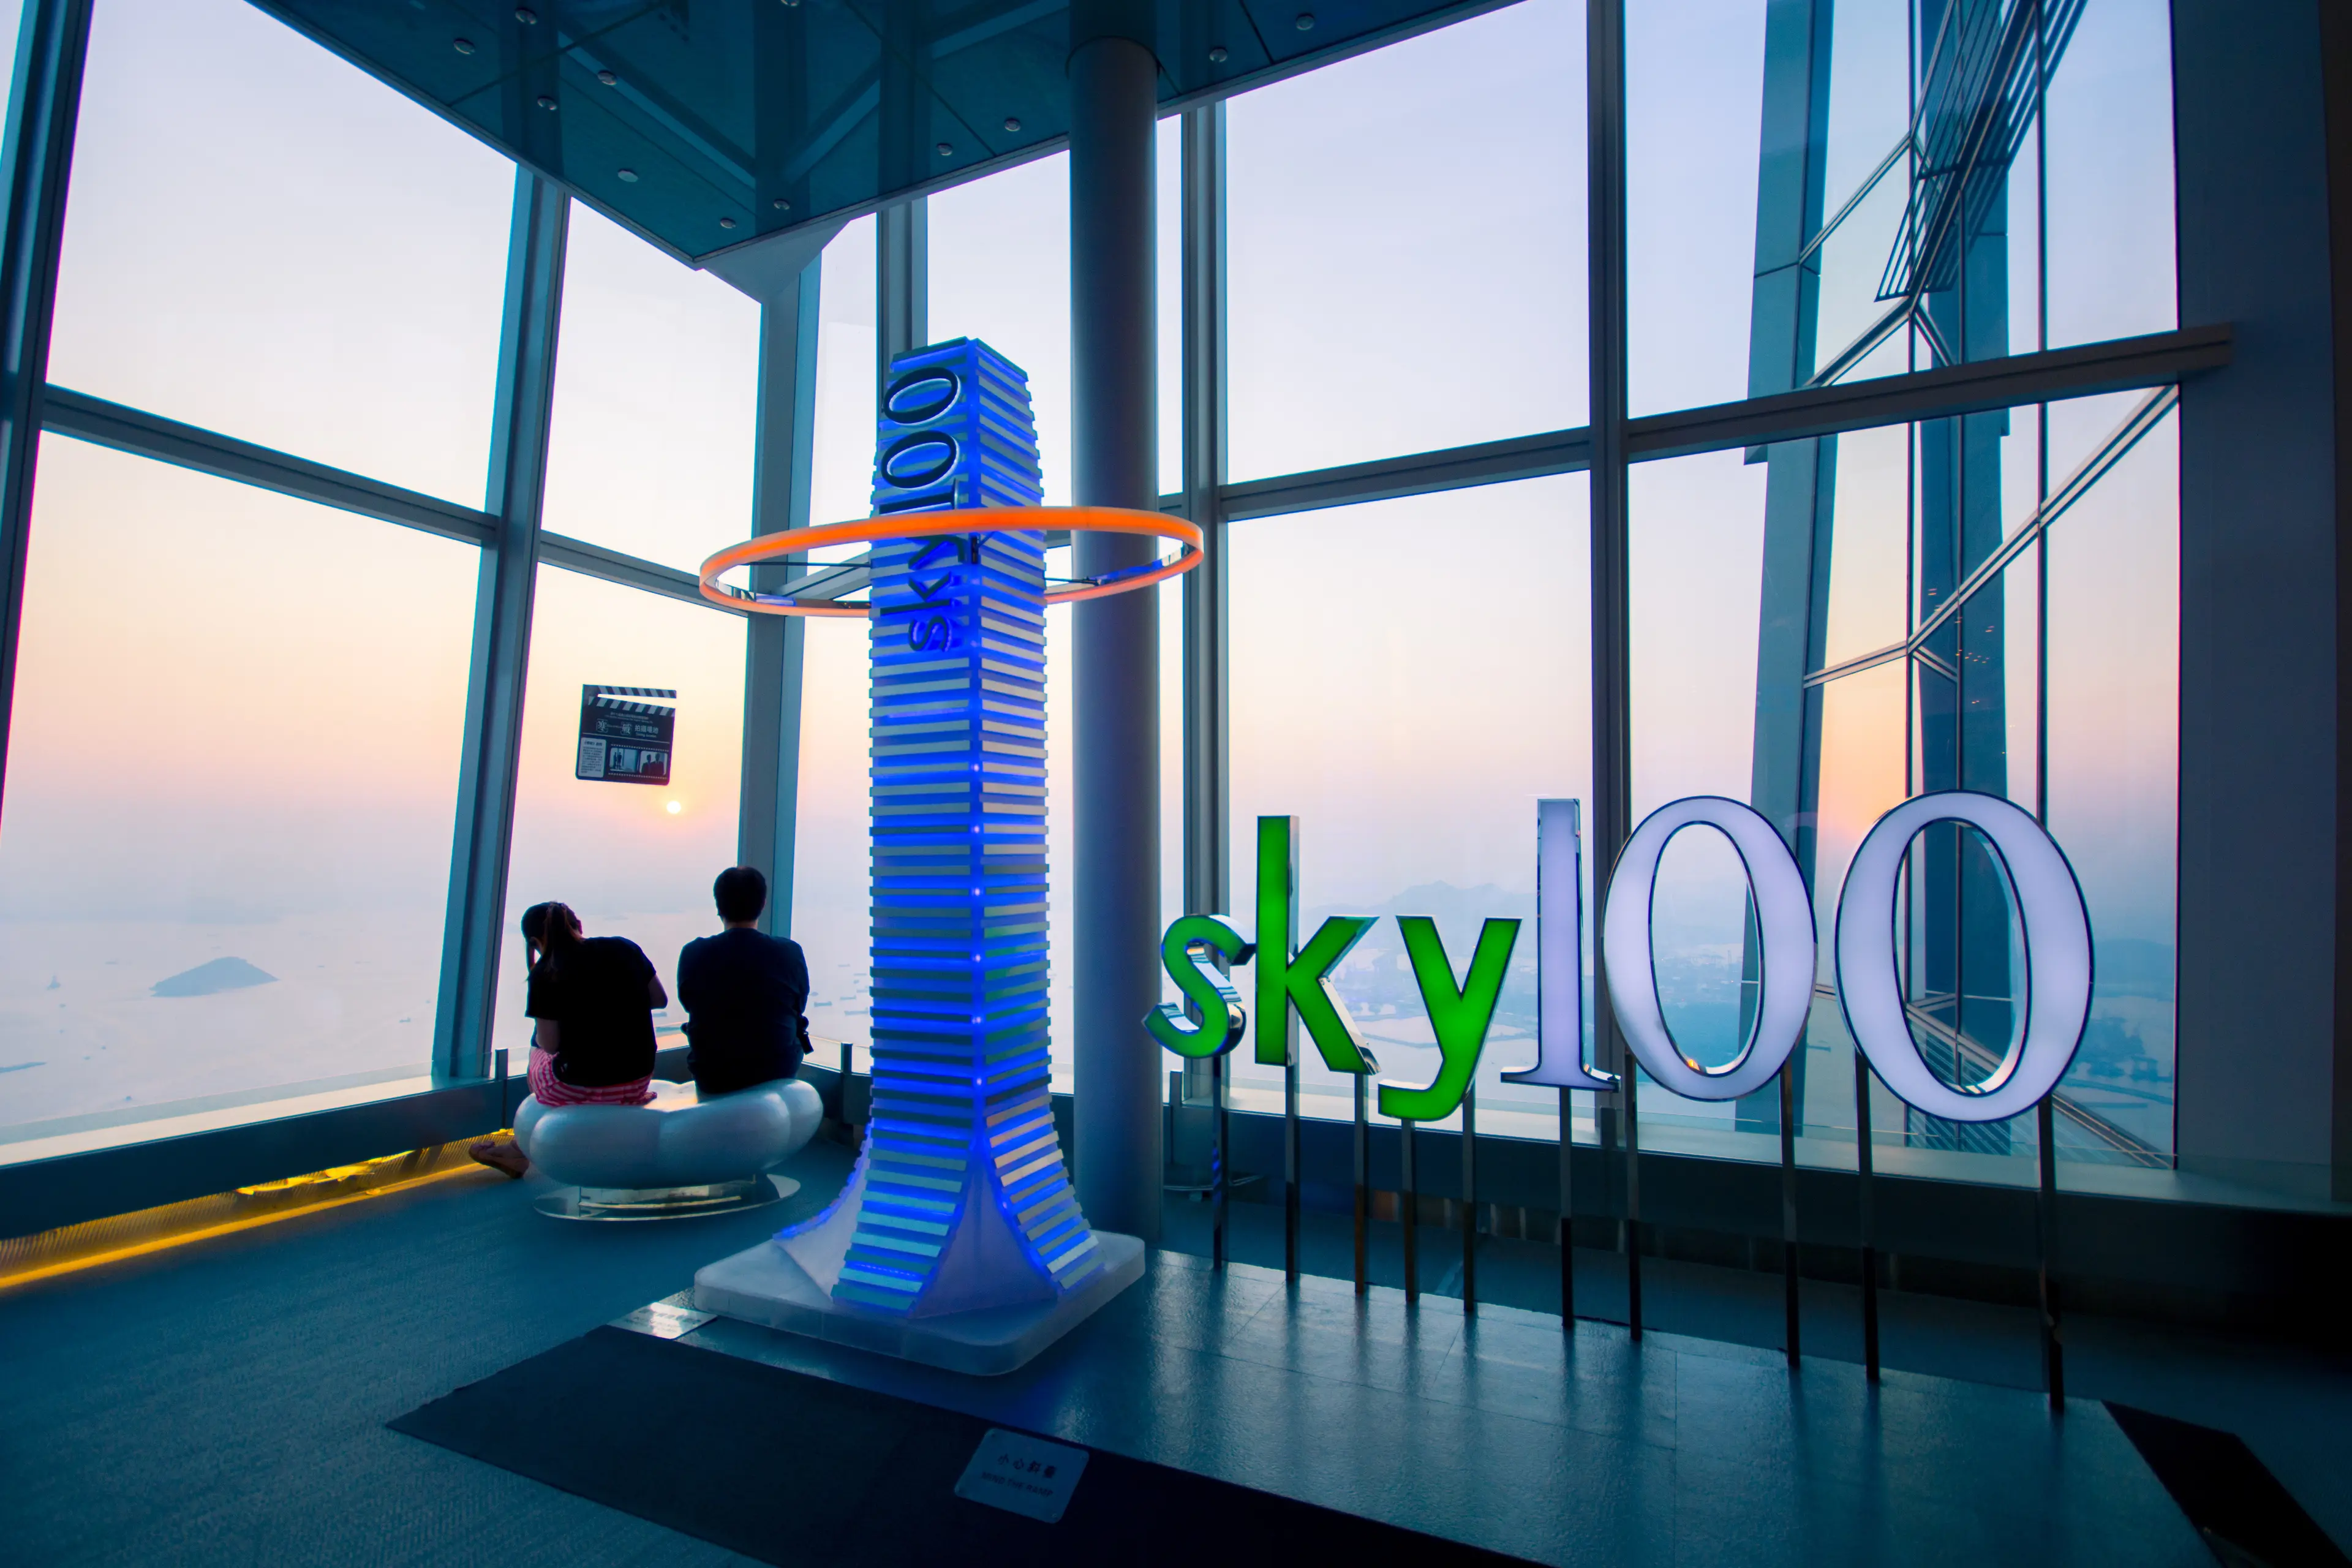 Sky100 Observation Deck